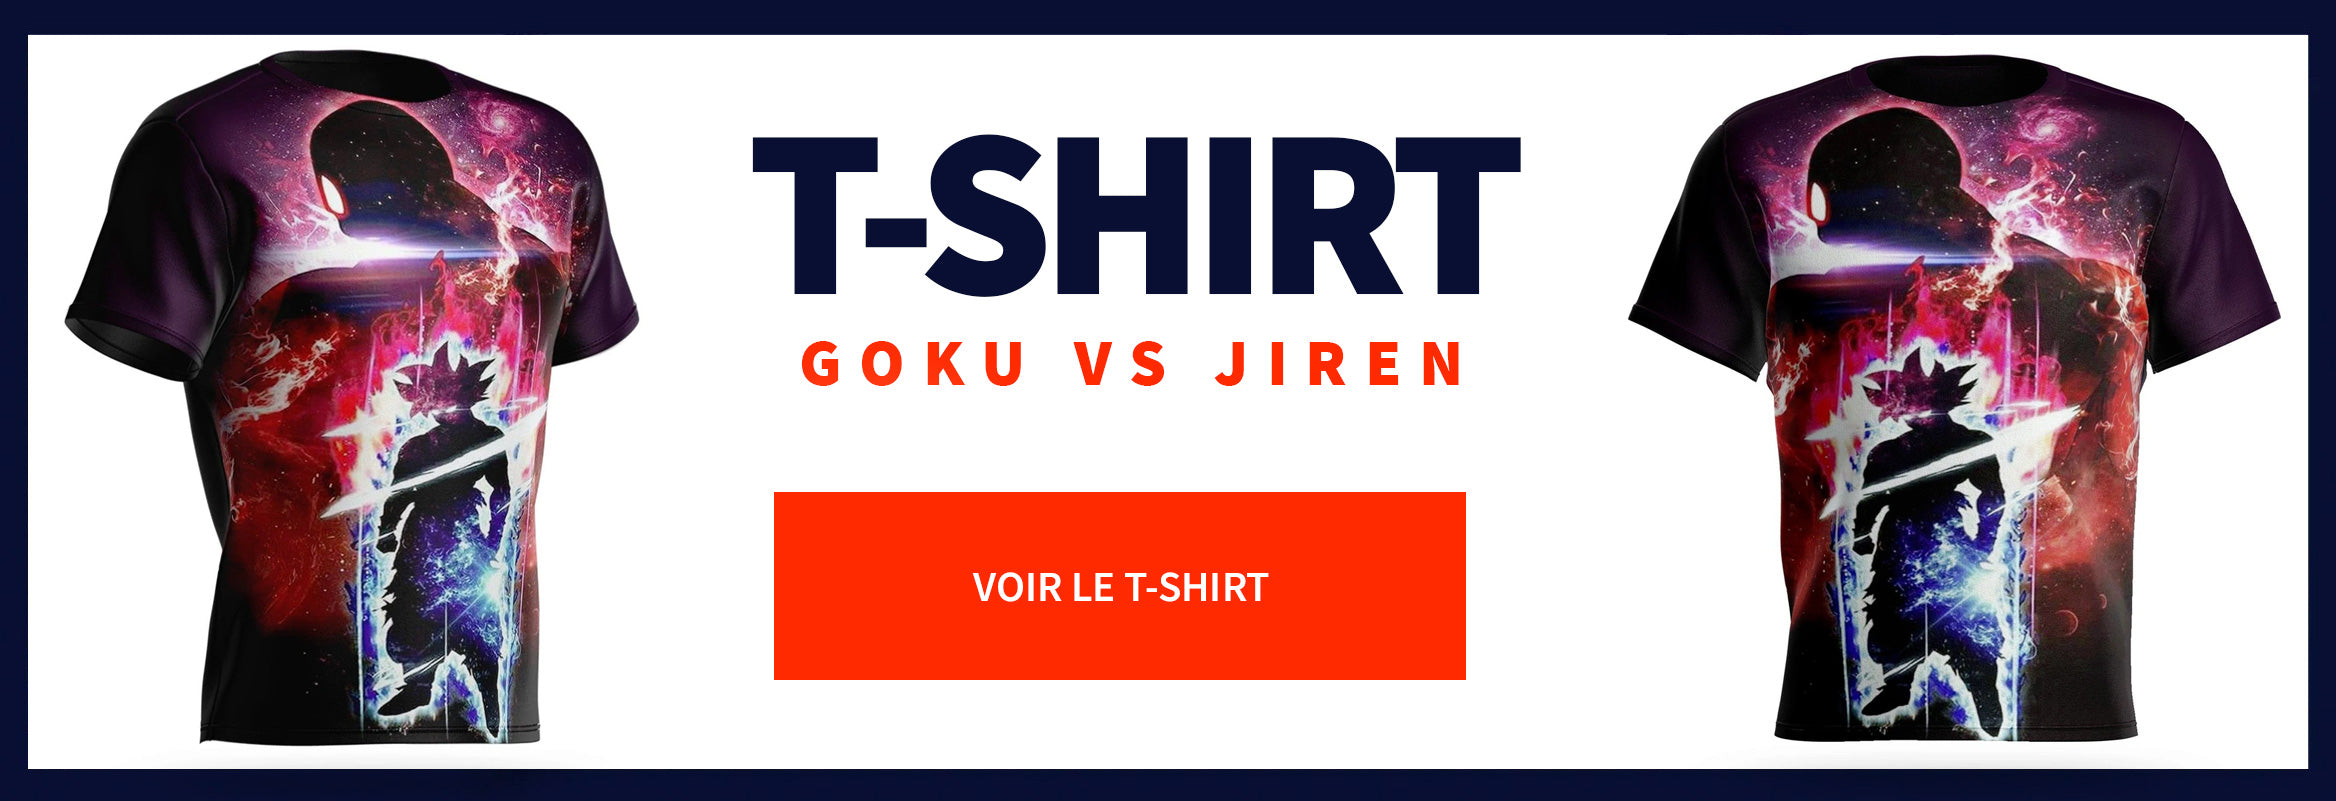 Camiseta Goku vs Jiren